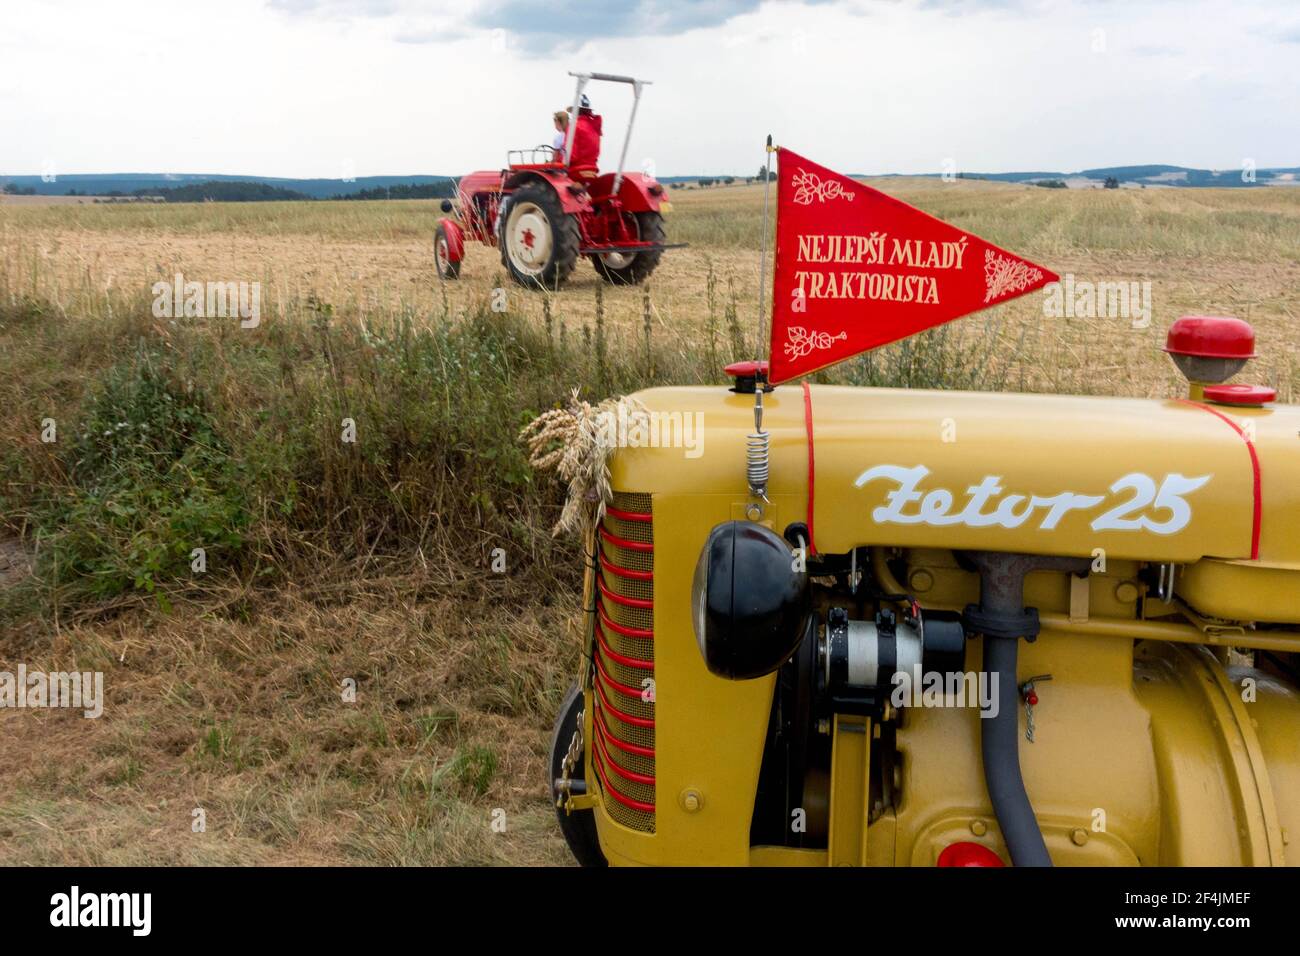 Traktor Zetor 25 von 50s, Tschechoslowakei Produkt, ländliche Landschaft, Tschechische Republik Stockfoto